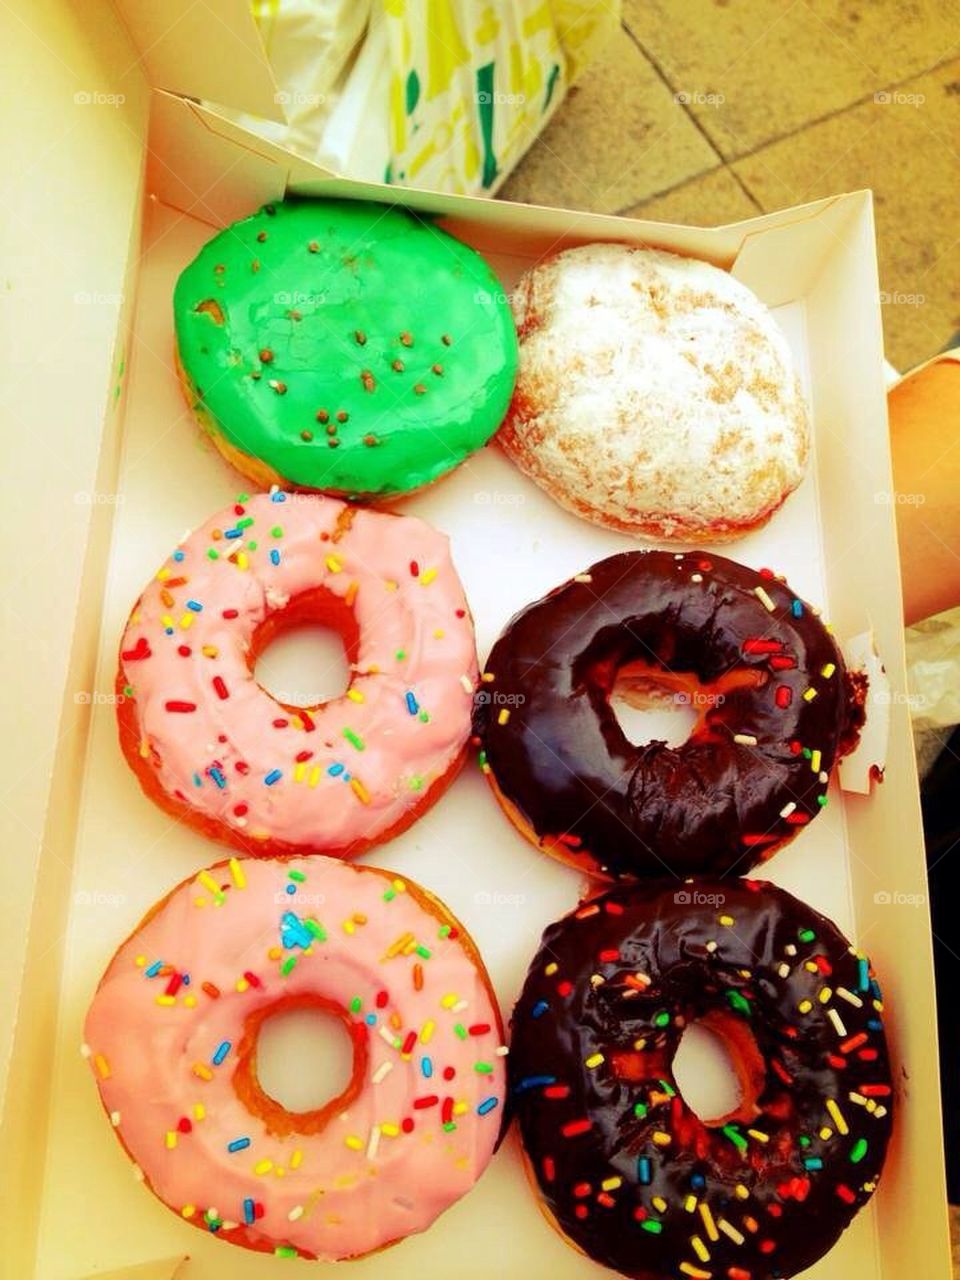 Yummi donuts 😍